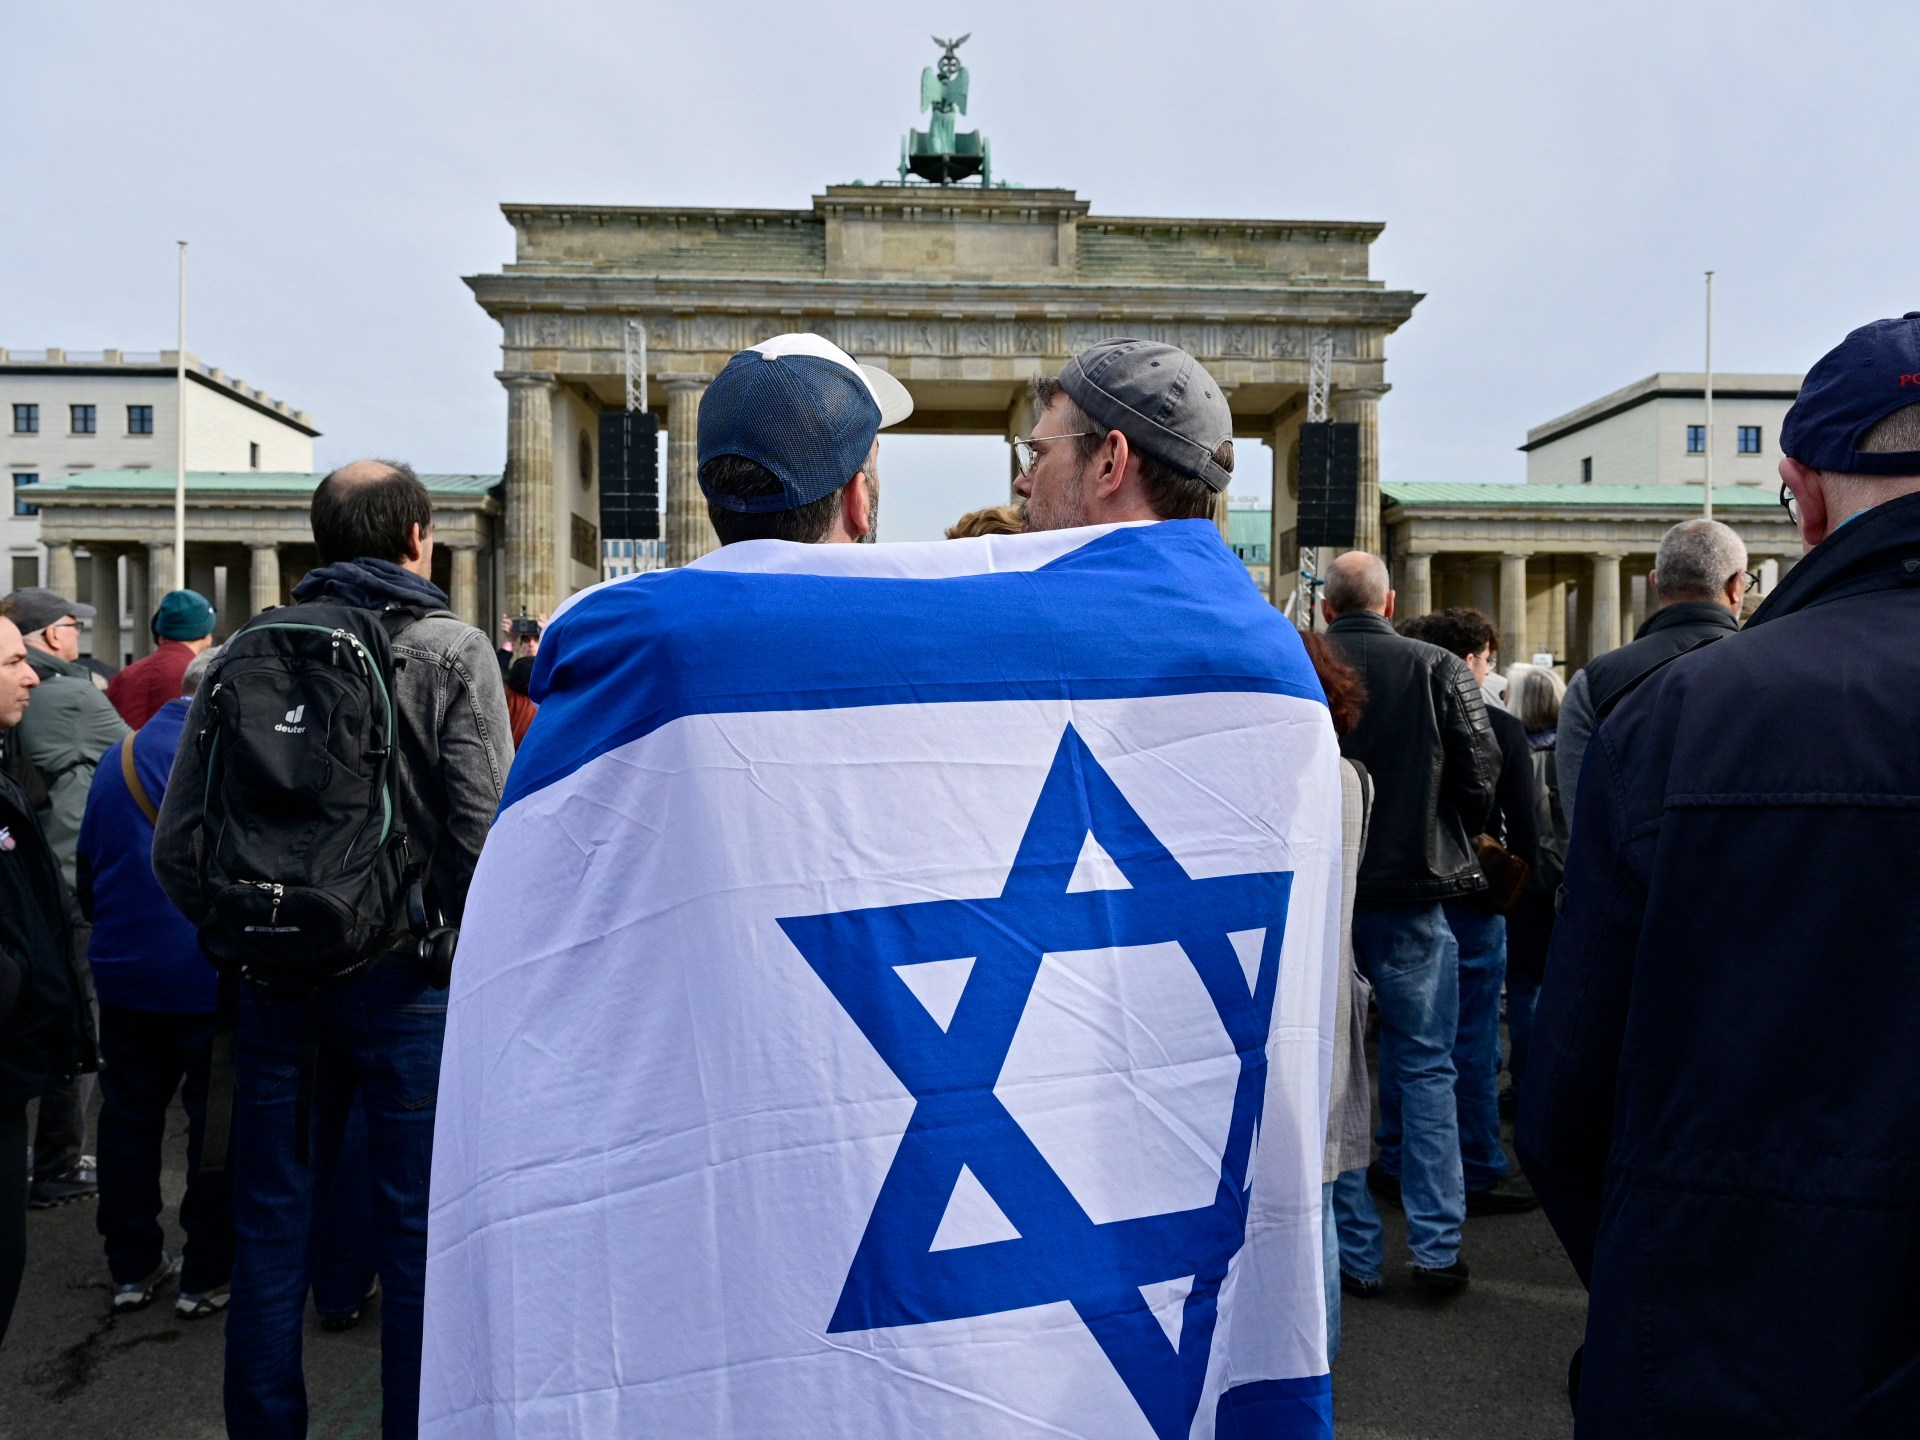 أسئلة عن الدين اليهودي ودعم إسرائيل في اختبار الجنسية الألمانية | أخبار – البوكس نيوز